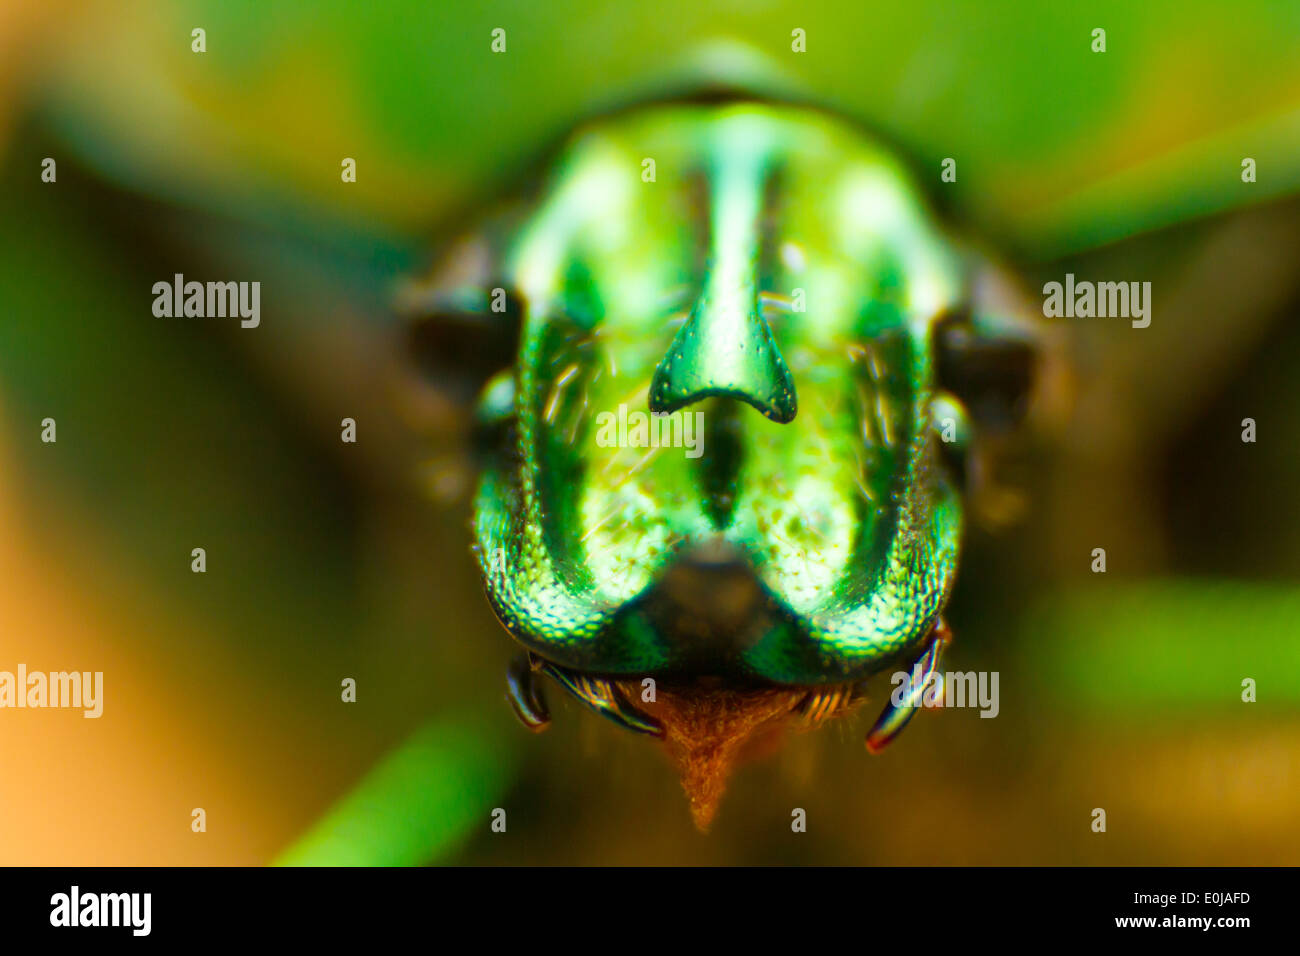 Frontale Makroaufnahme eines Cotinus Nitida Bug oder grün Juni Käfers. Das Insekt zeigt eine eigentümliche Horn, rote Zunge und abstrakt aussehen. Symmetrische Schuss Stockfoto